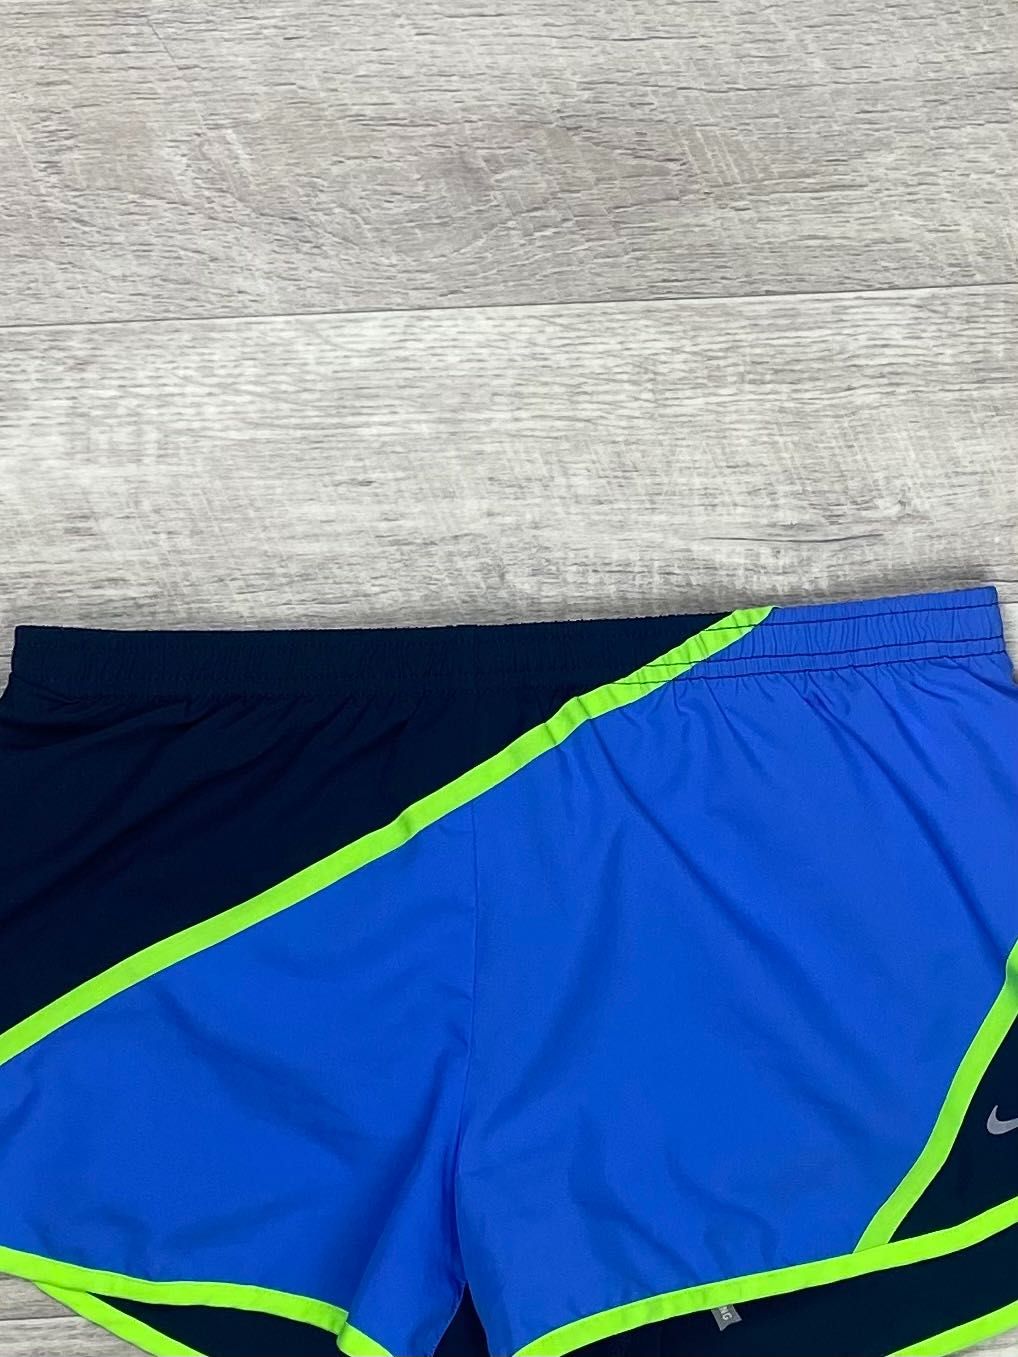 Nike dri-fit шорты S размер женские спортивные оригинал